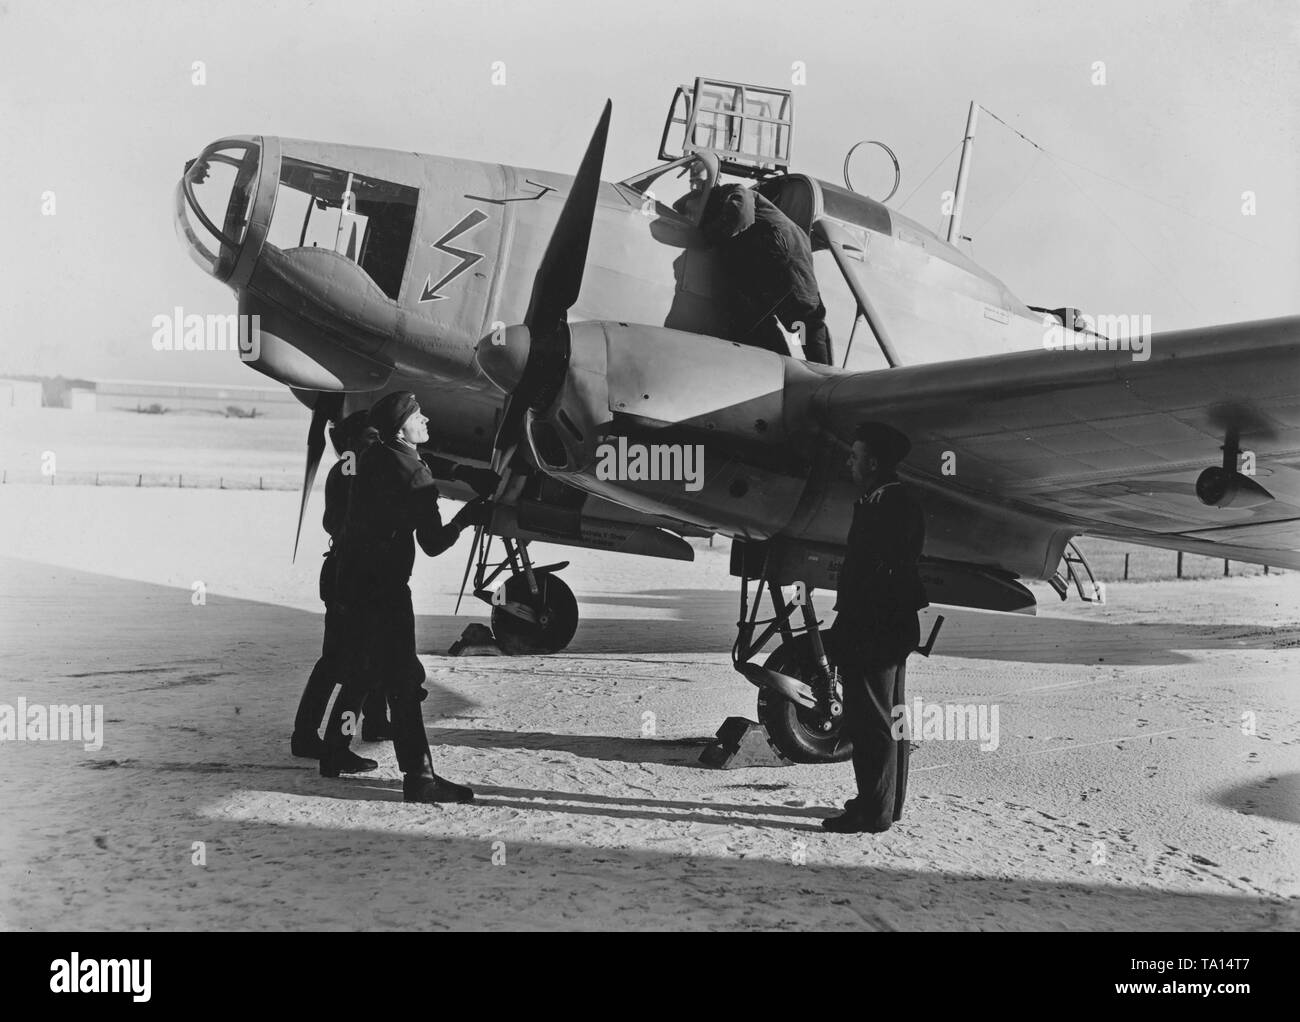 Focke Wulf 58 aeromobili consacrazione su un aeroporto nei pressi di Berlino. Foto Stock